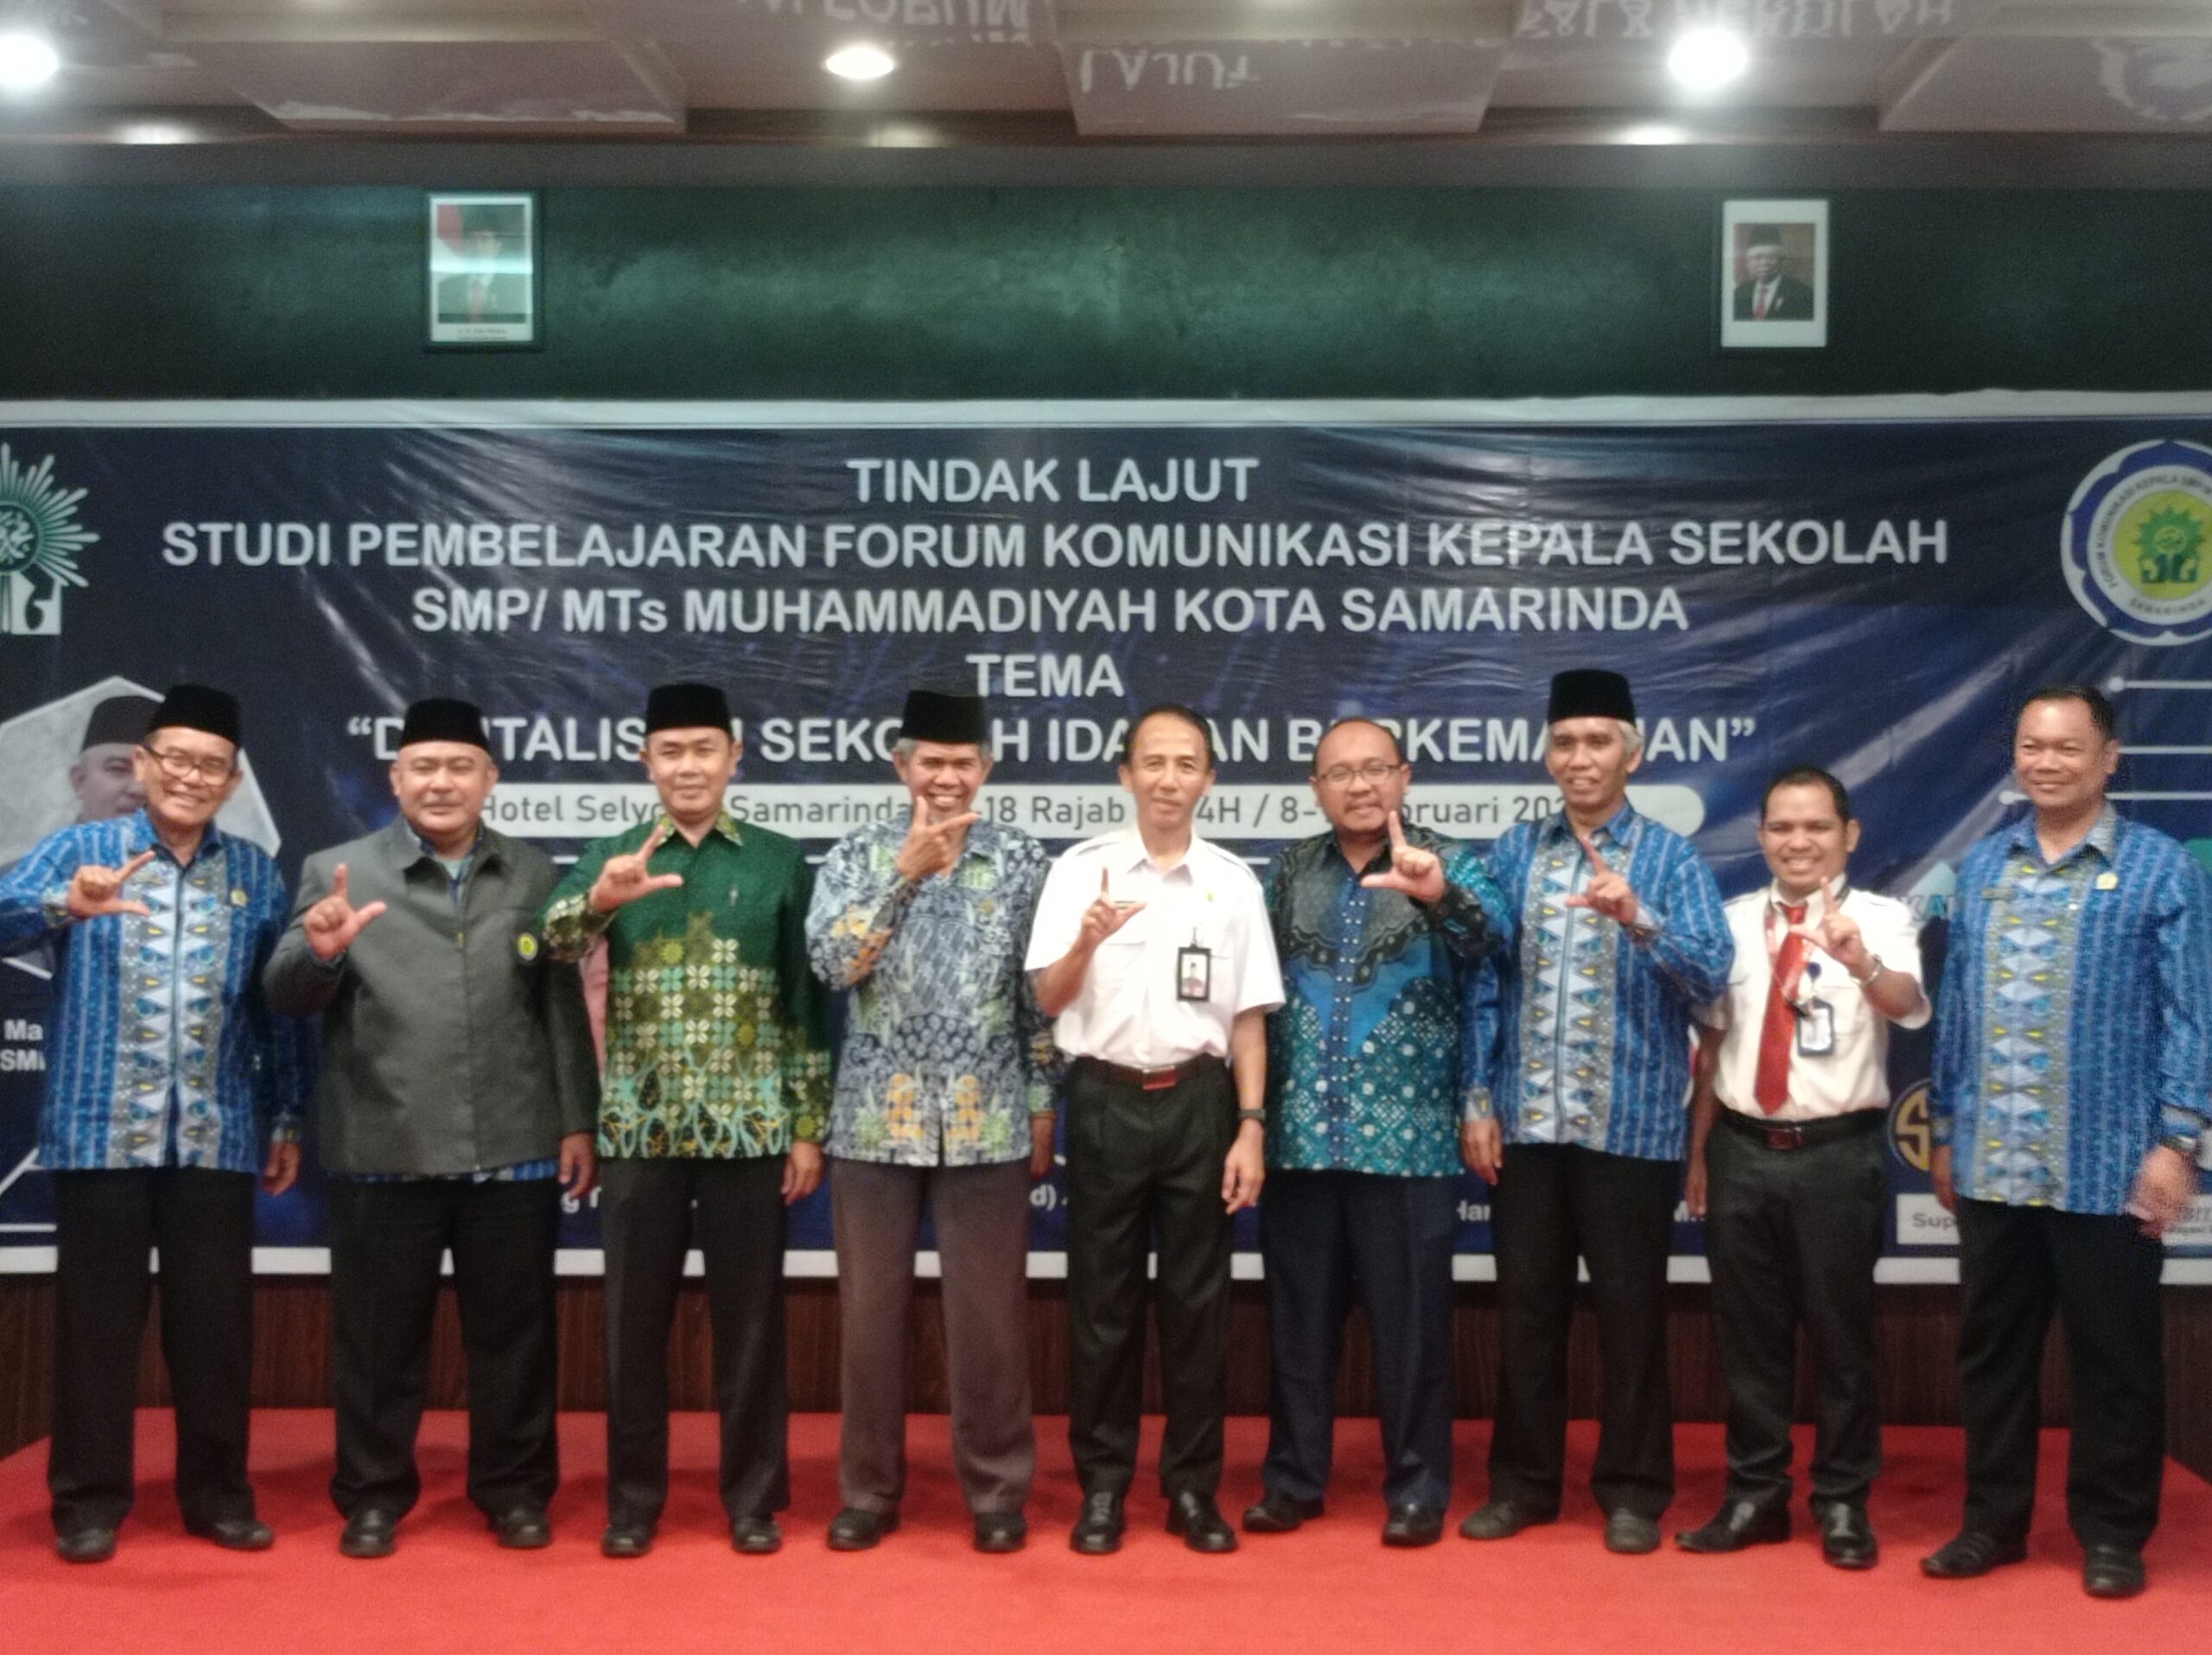 Pembukaan Pelatihan Digitalisasi Sekolah Muhammadiyah Idaman dan Berkemajuan